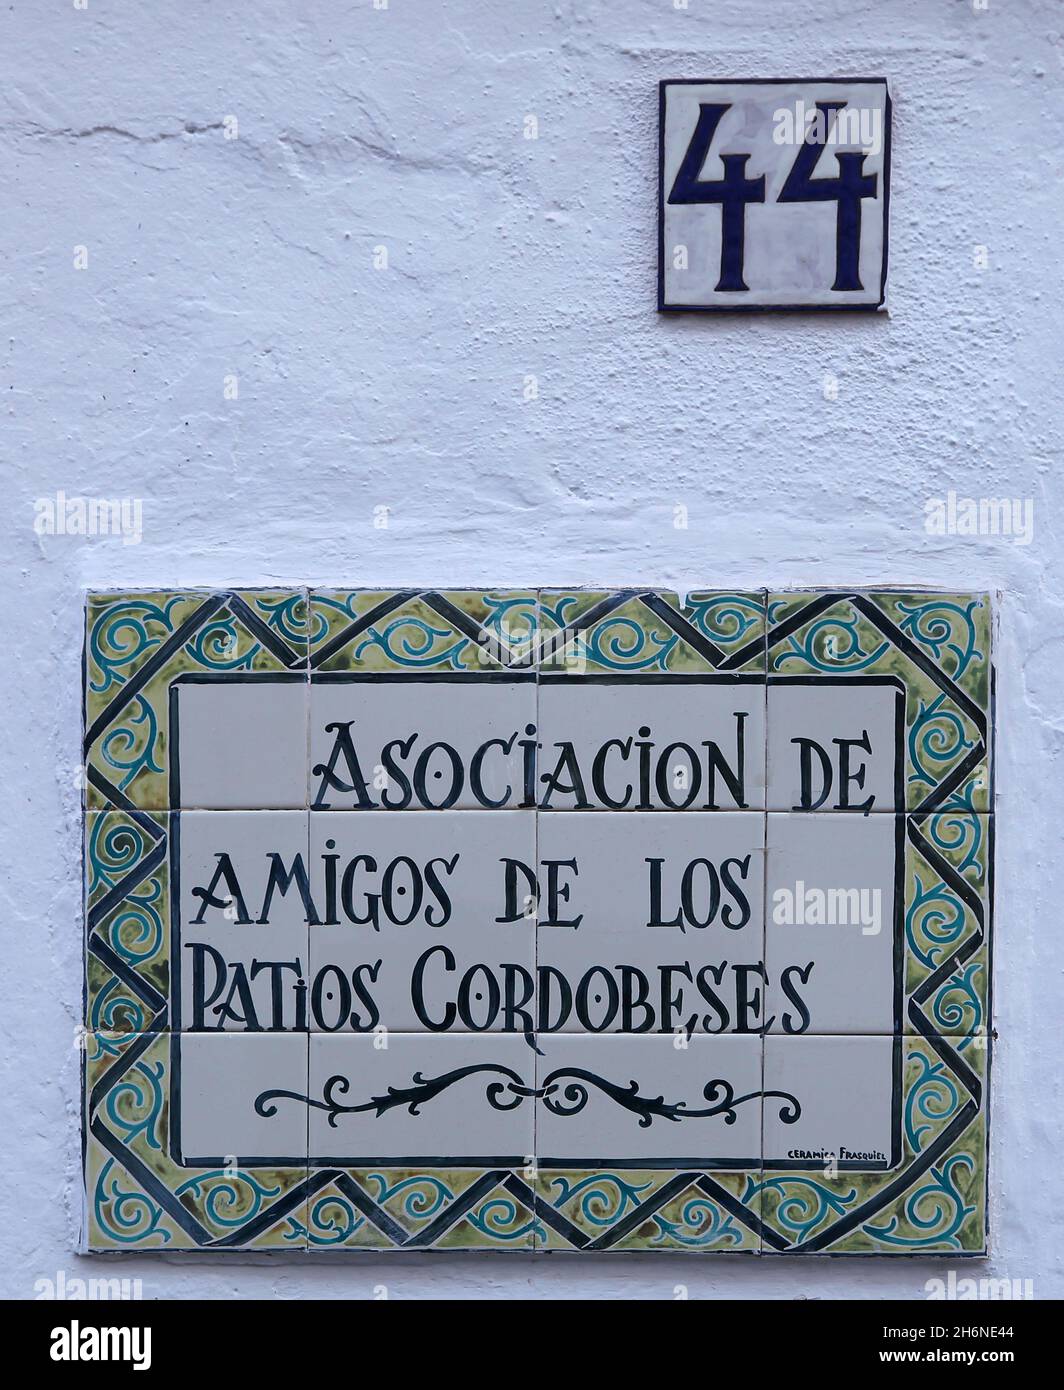 Die Höfe von Cordoba in Spanien, mit dem Festival der Höfe („Patios“) von Cordoba (zum Weltkulturerbe erklärt), bei dem die am Wettbewerb teilnehmenden Eigentümer ihre Höfe der Öffentlichkeit zugänglich machen. Es ist möglich, die Höfe in Córdoba das ganze Jahr über zu besuchen. Stockfoto